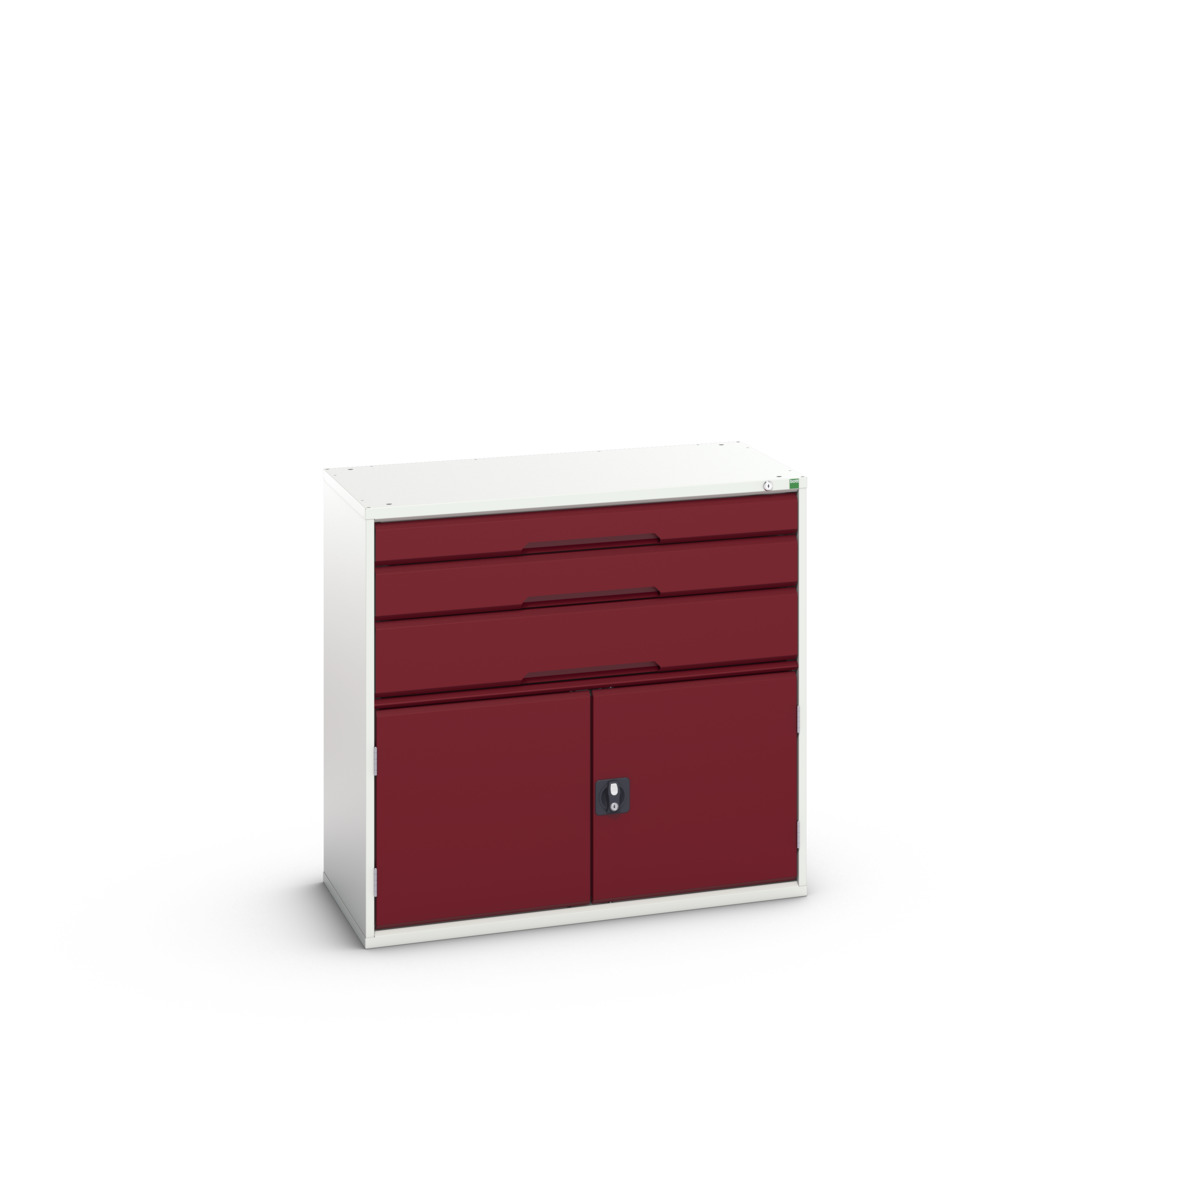 16925561.24 - verso drawer-door cabinet